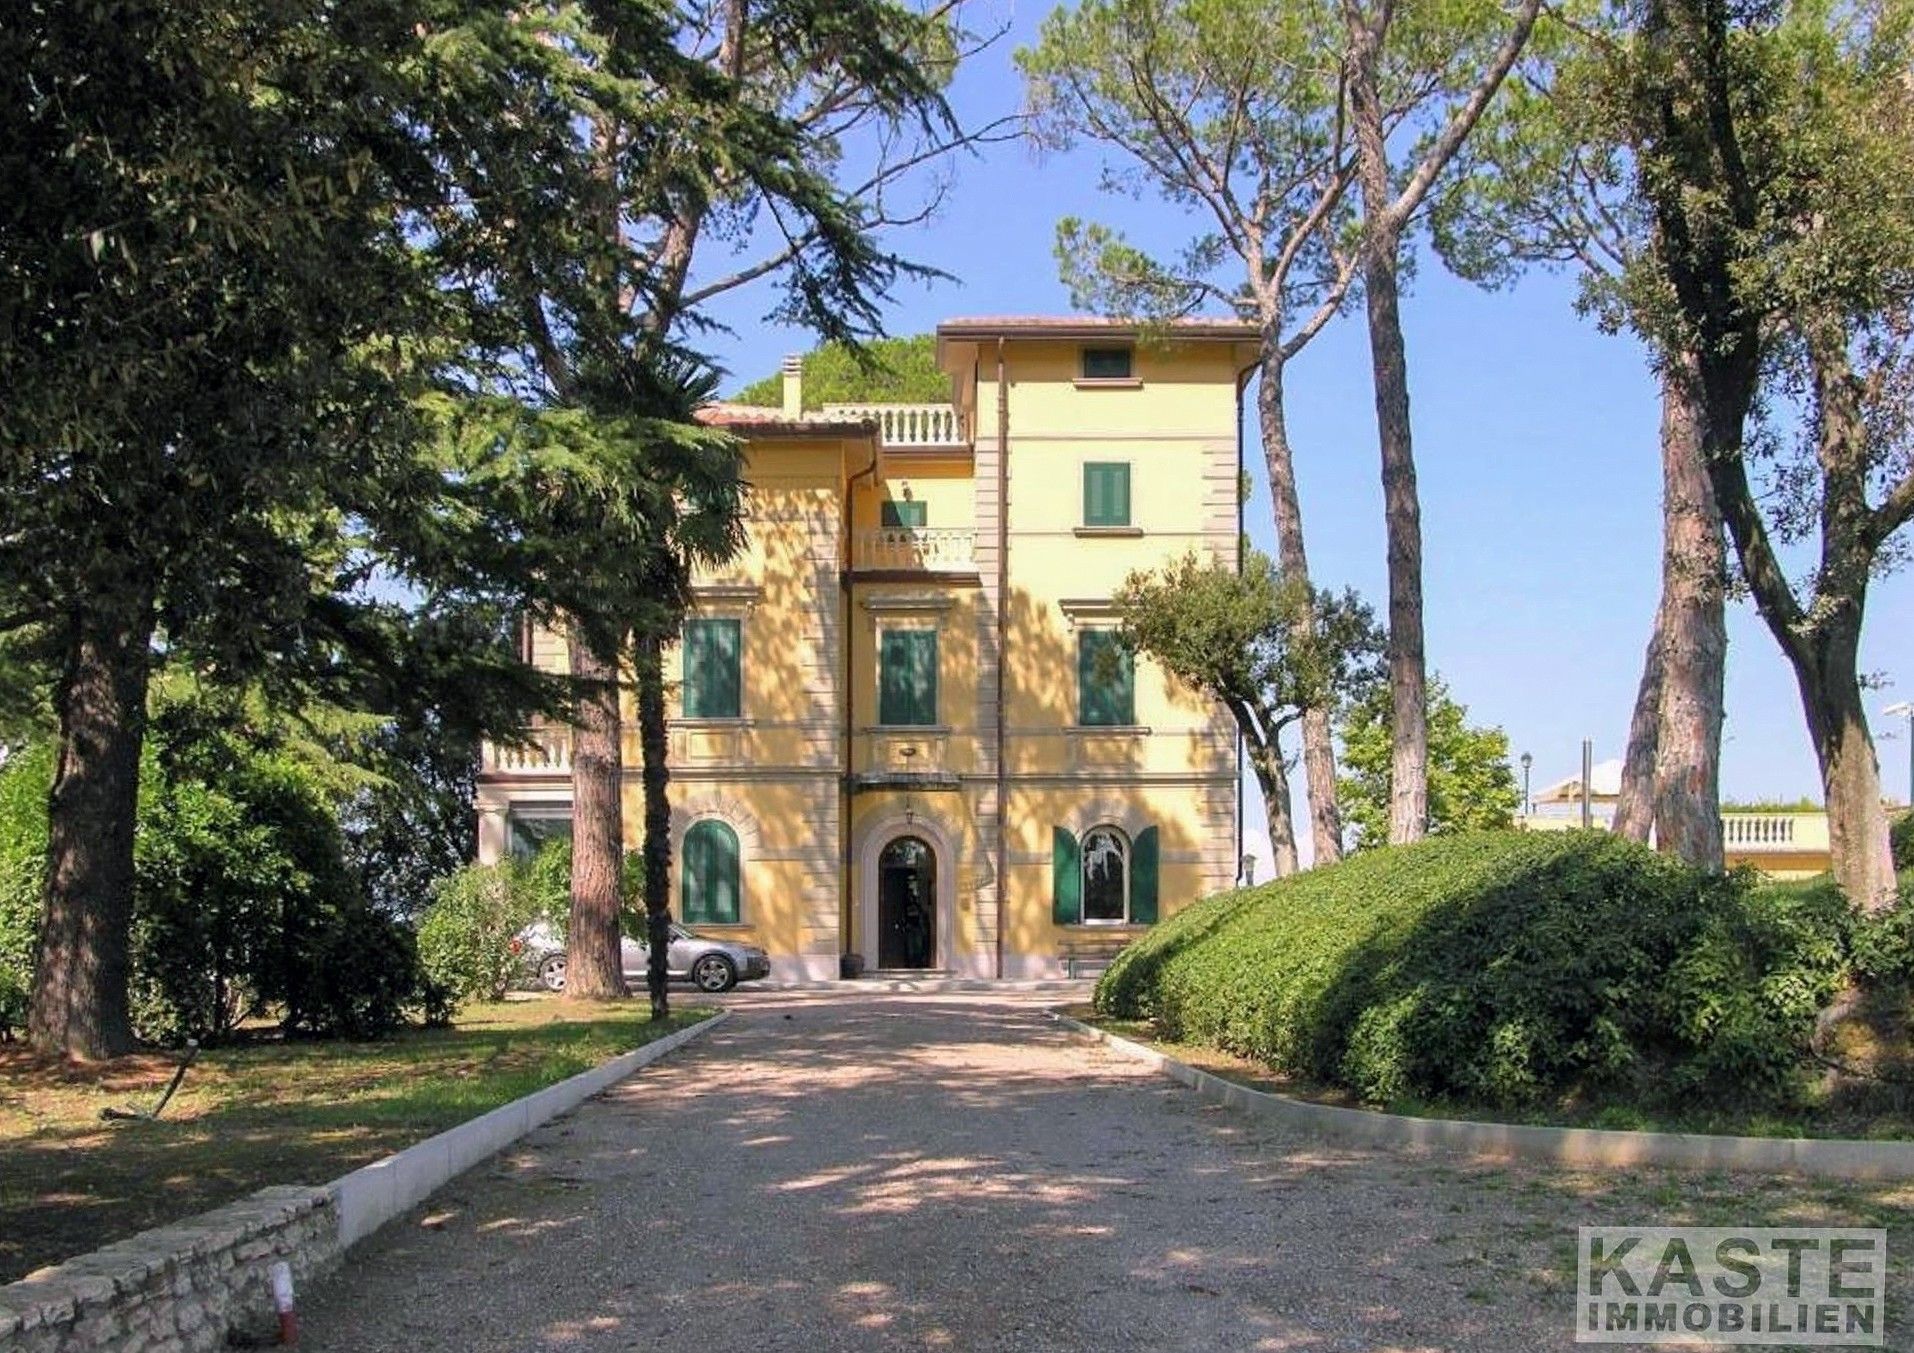 Images Villa in Toscane met 5 hectare grond en wijngaard